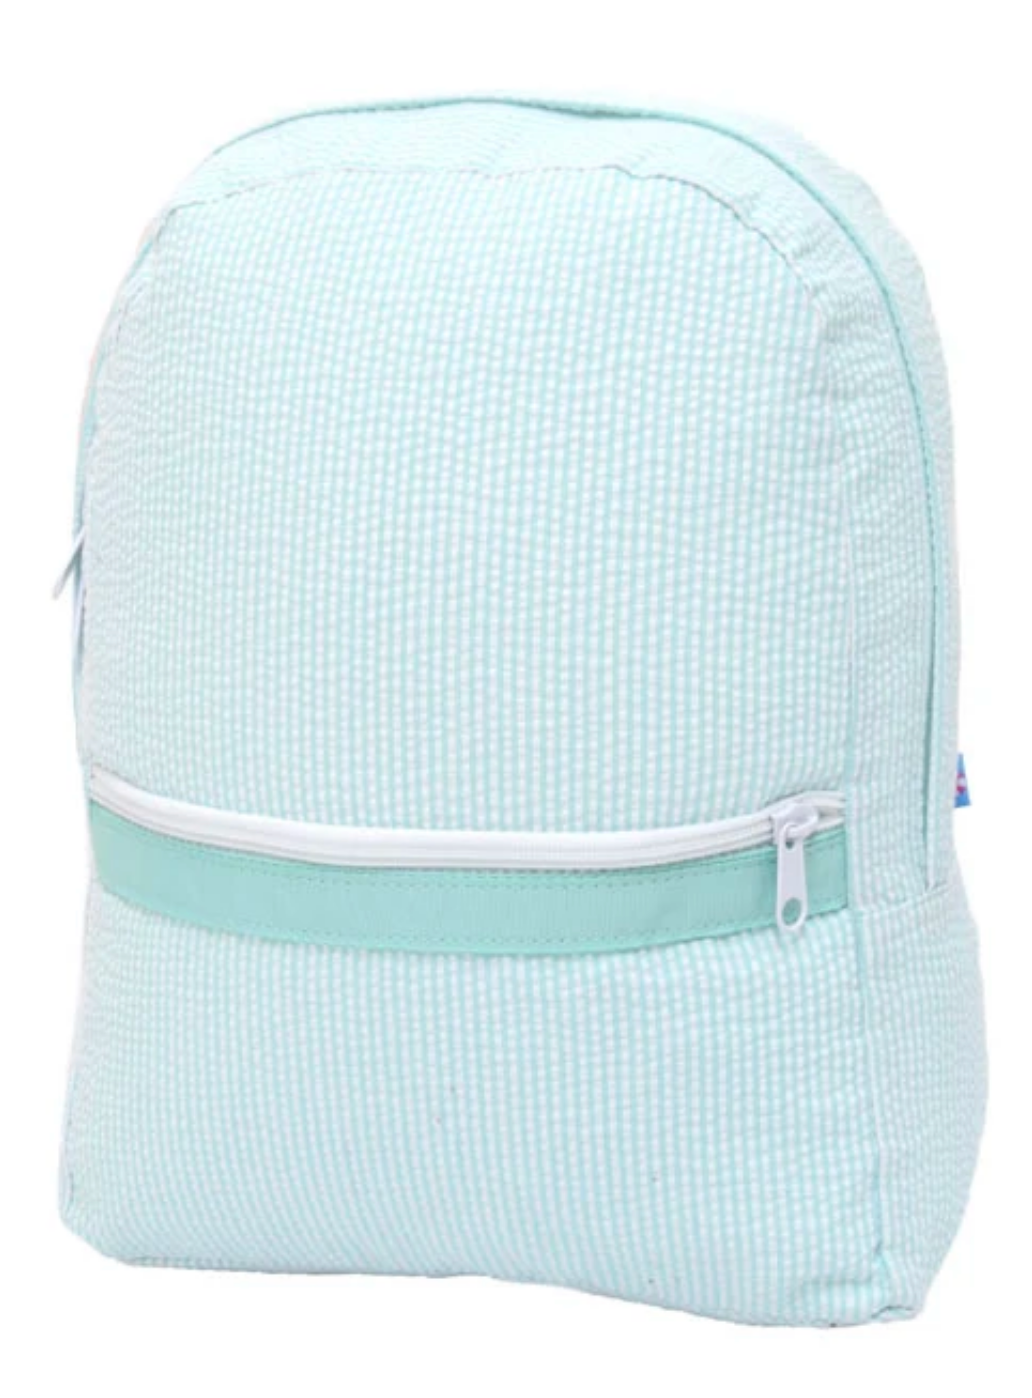 Mint Green Seersucker Backpack- Medium